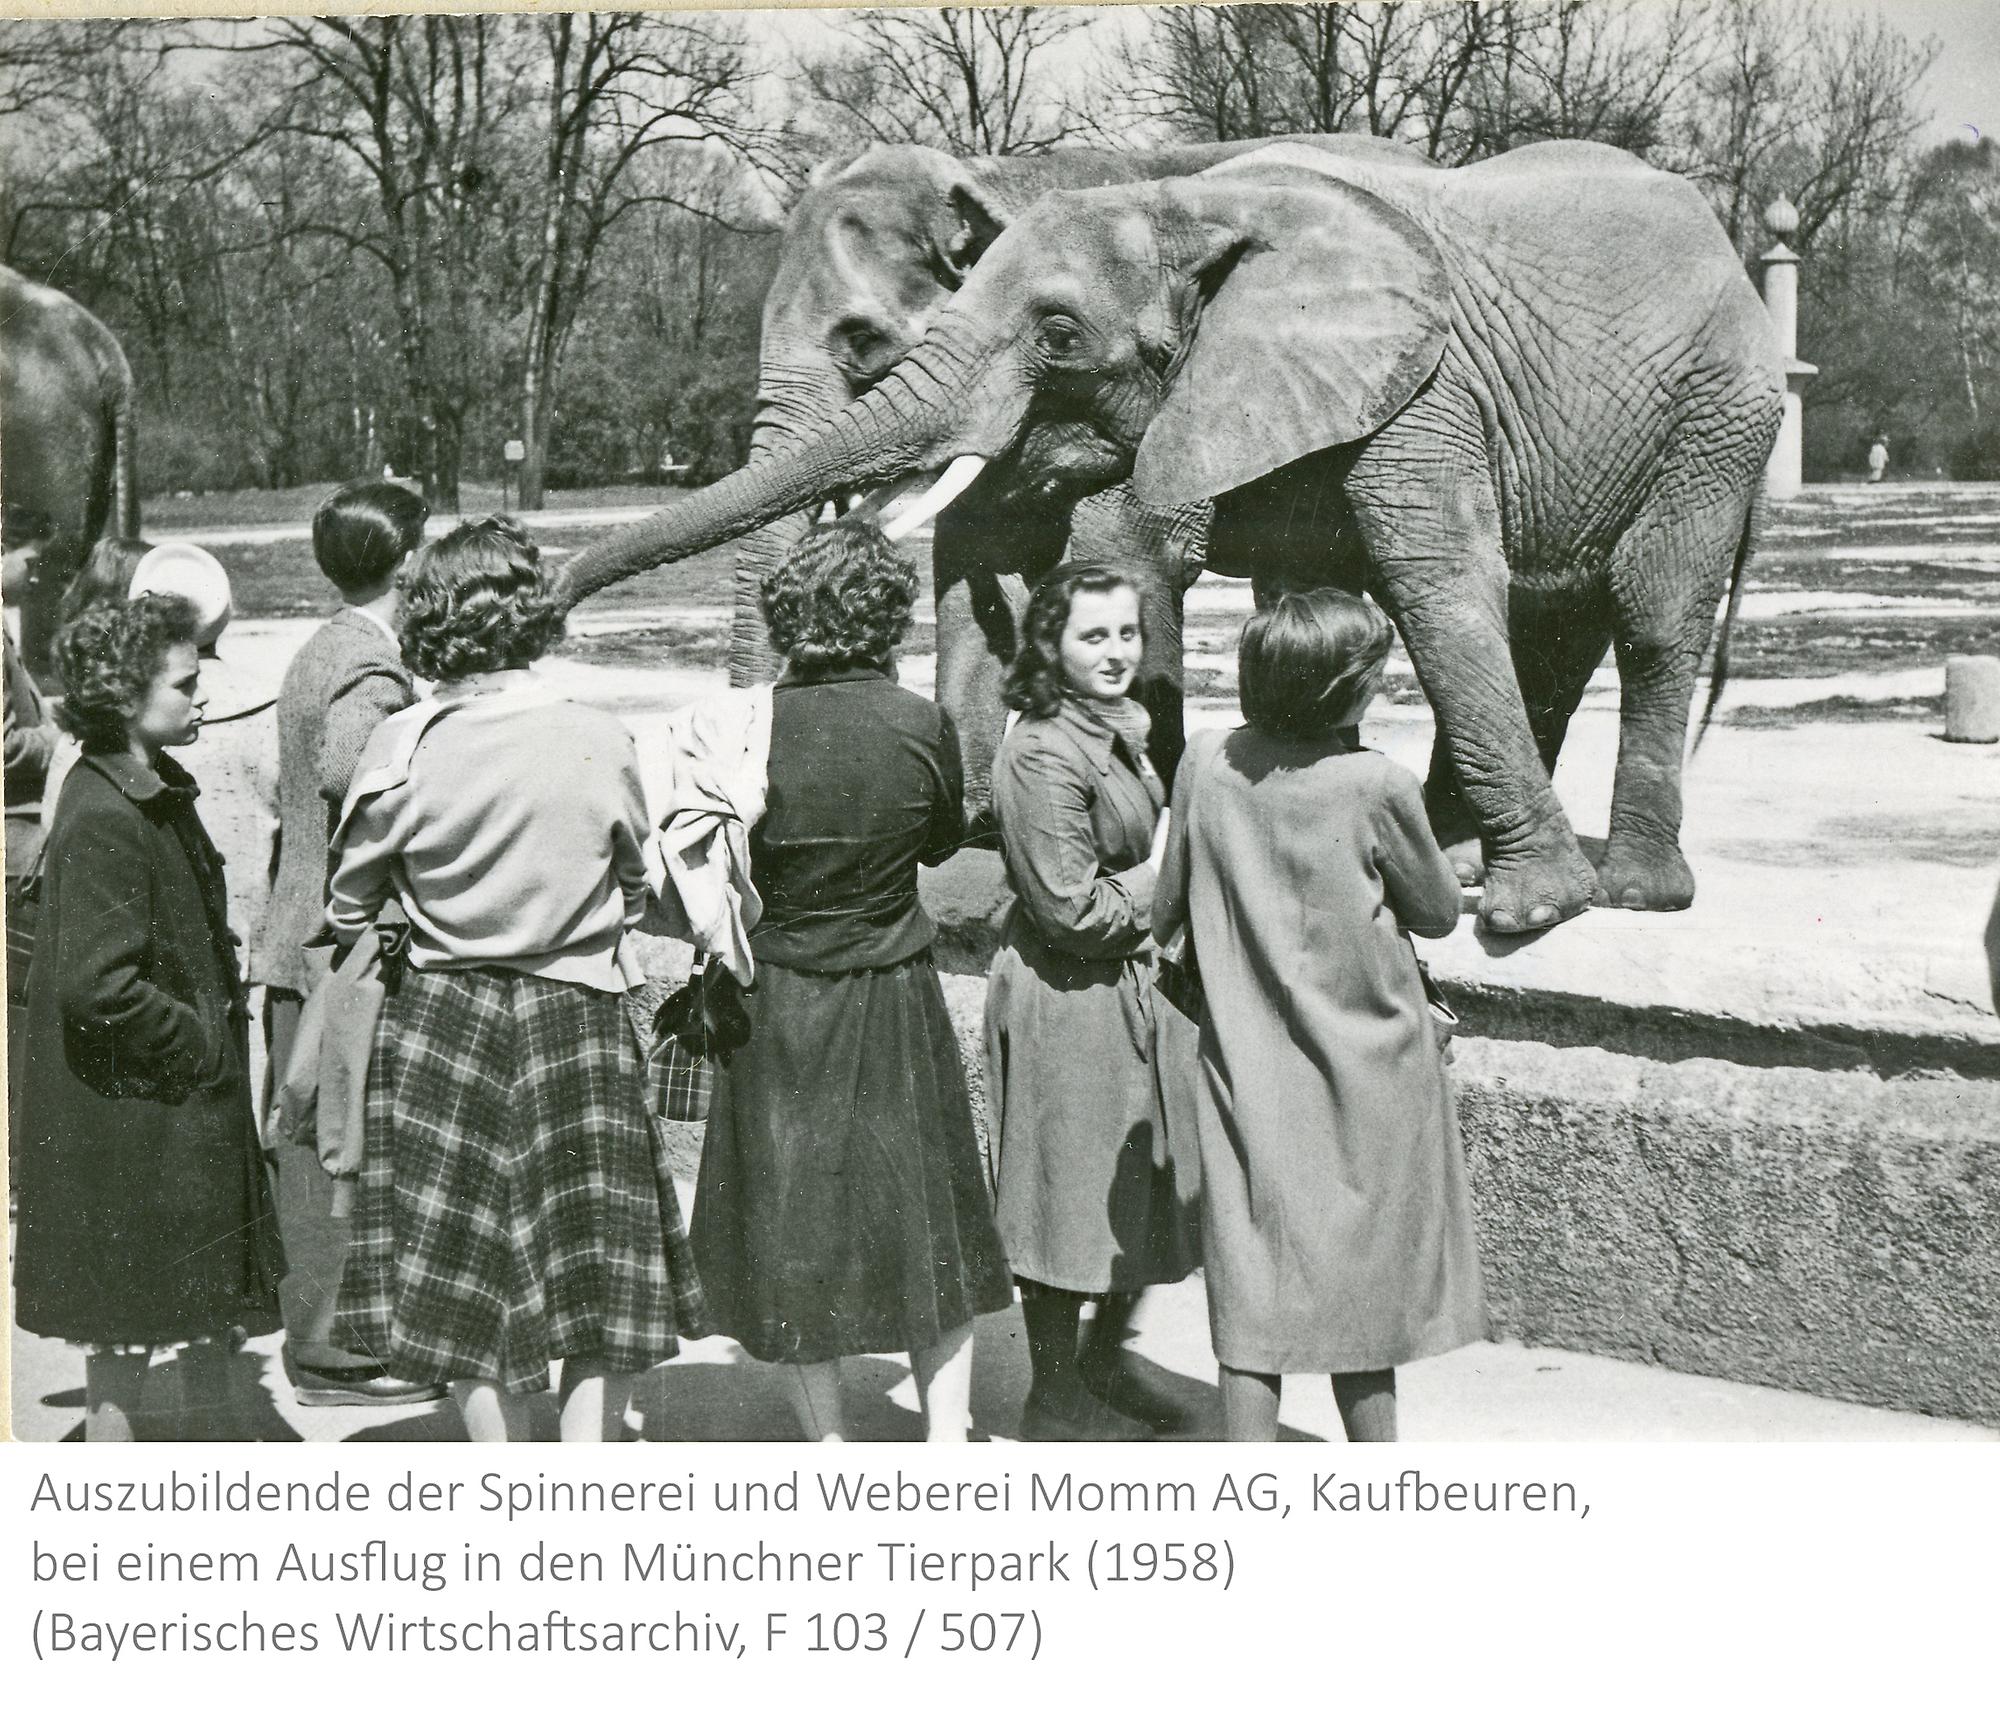 Auszubildende der Spinnerei und Weberei Momm AG, Kaufbeuren, bei einem Ausflug in den Tierpark Hellabrunn, 1958